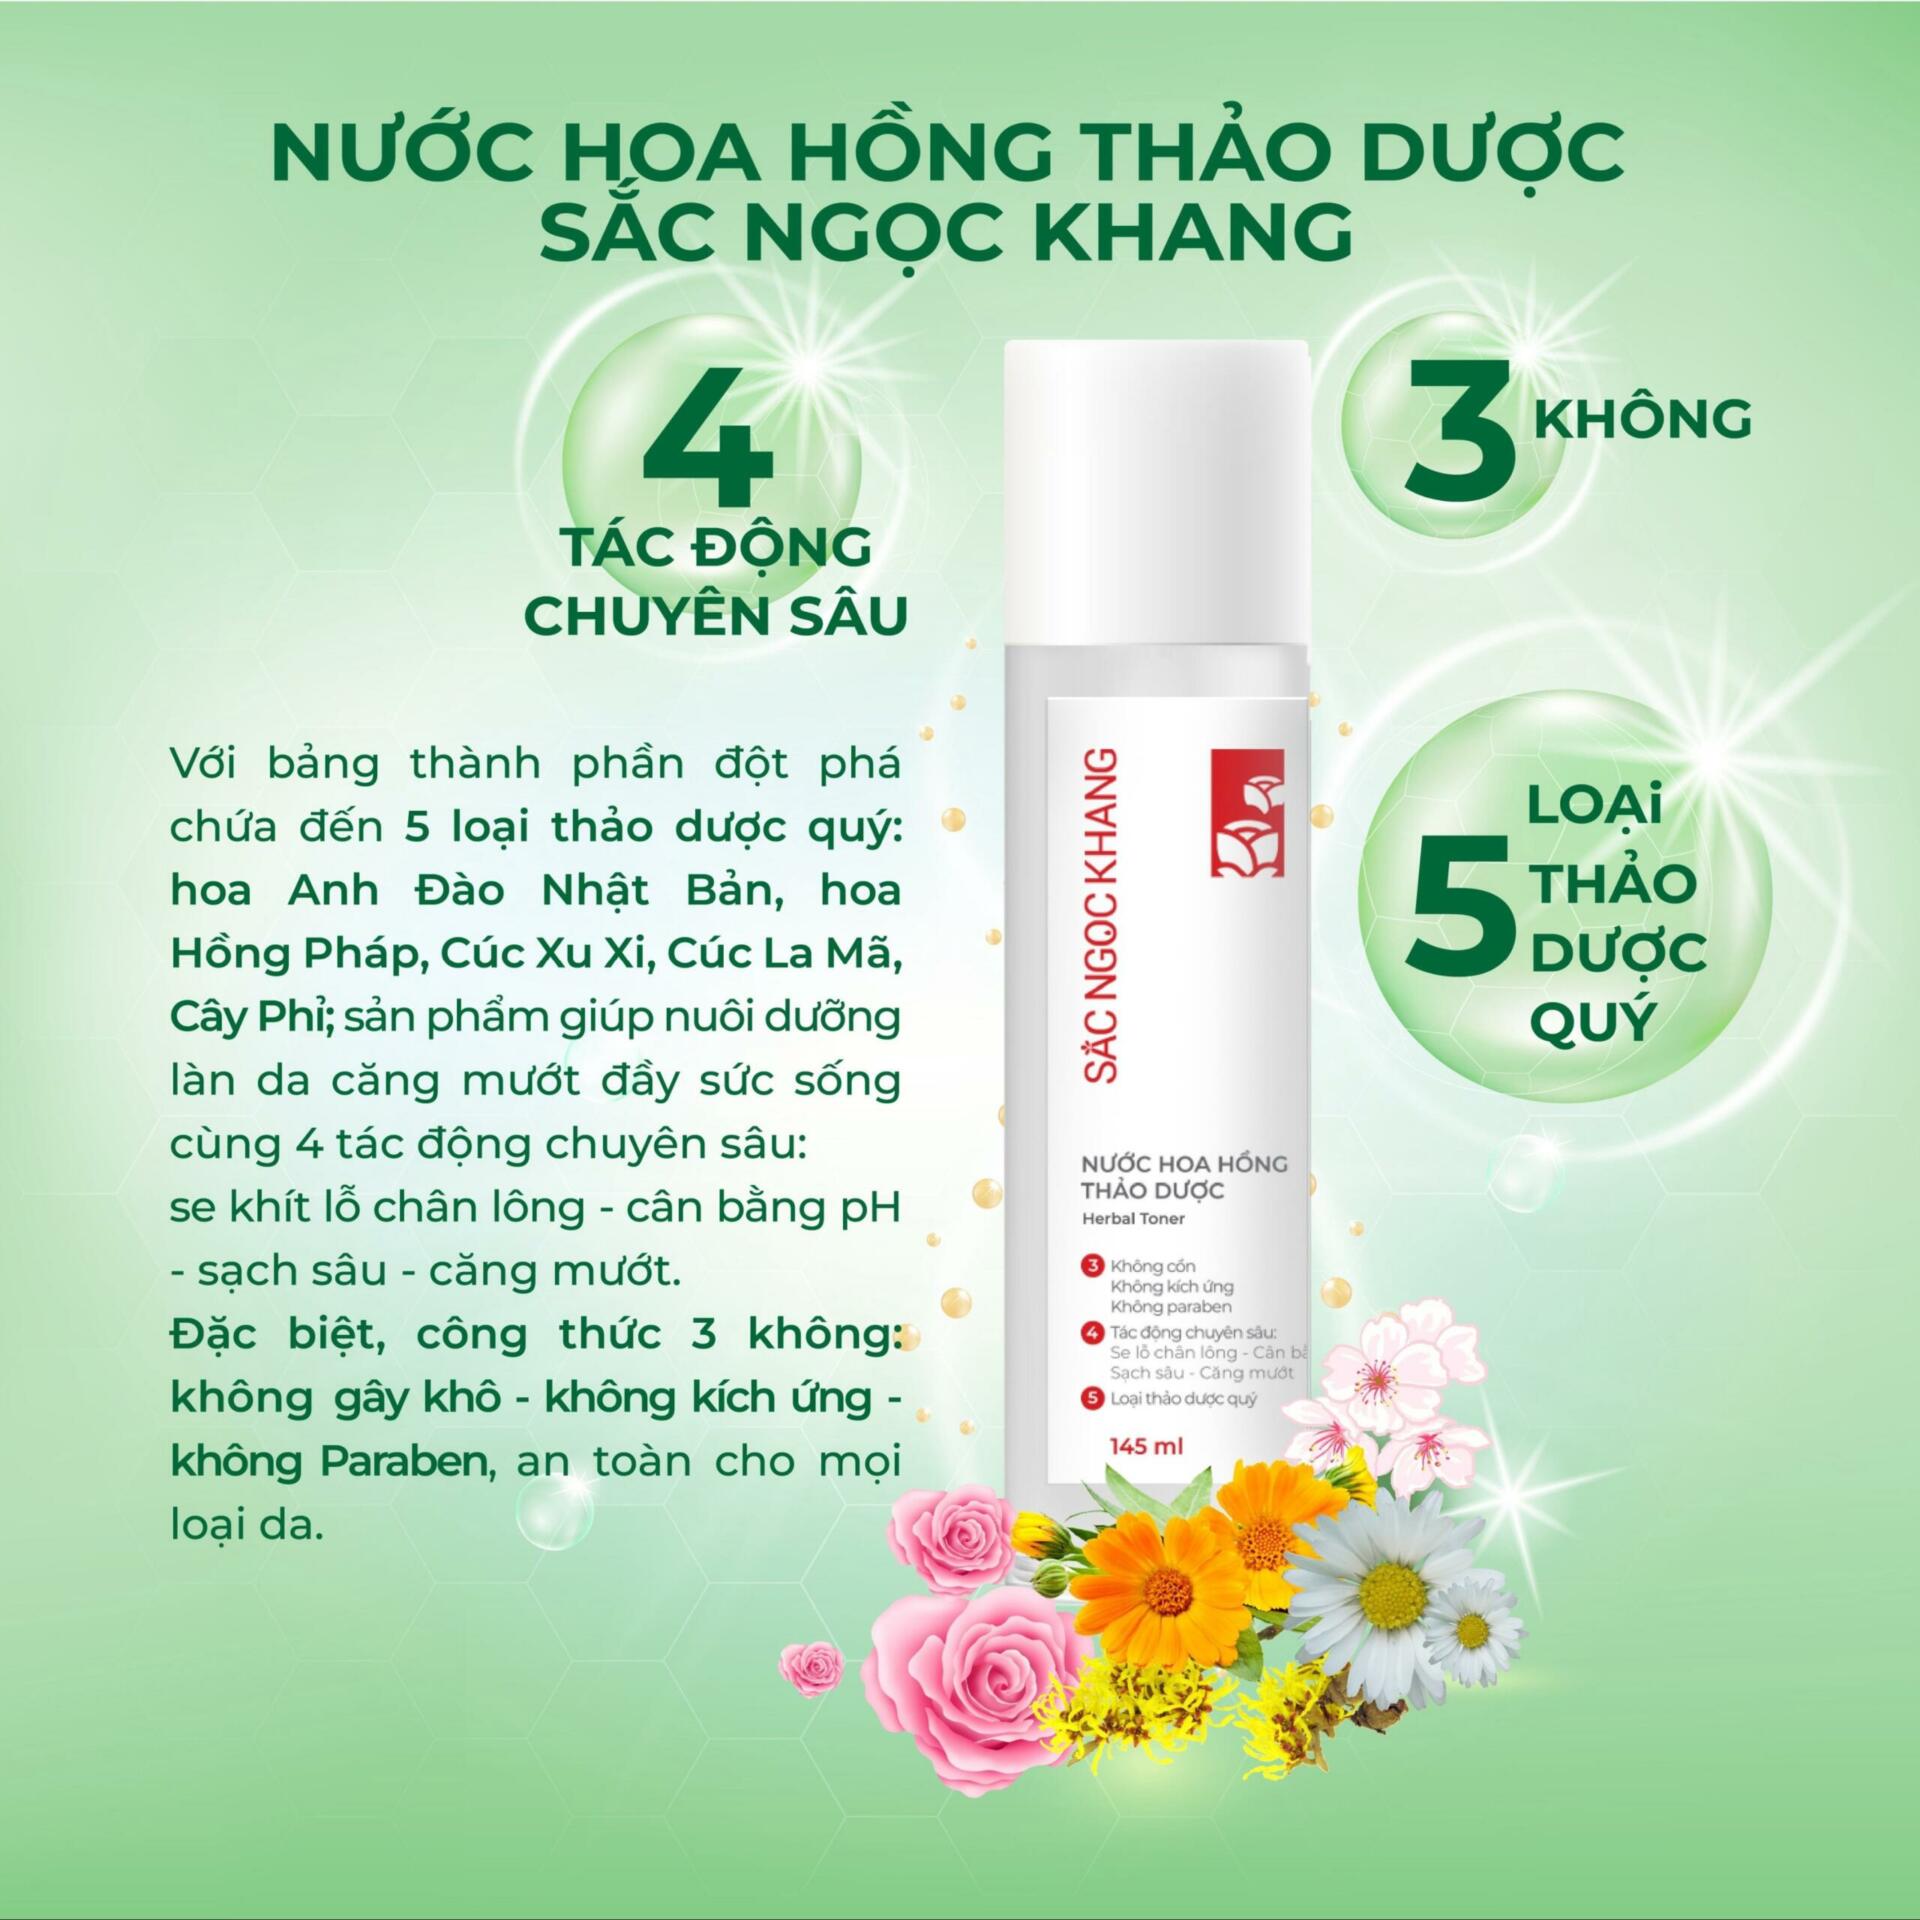 mochanstore.com NUOC HOA HONG THAO DUOC SAC NGOC KHANG 145ML 1 scaled